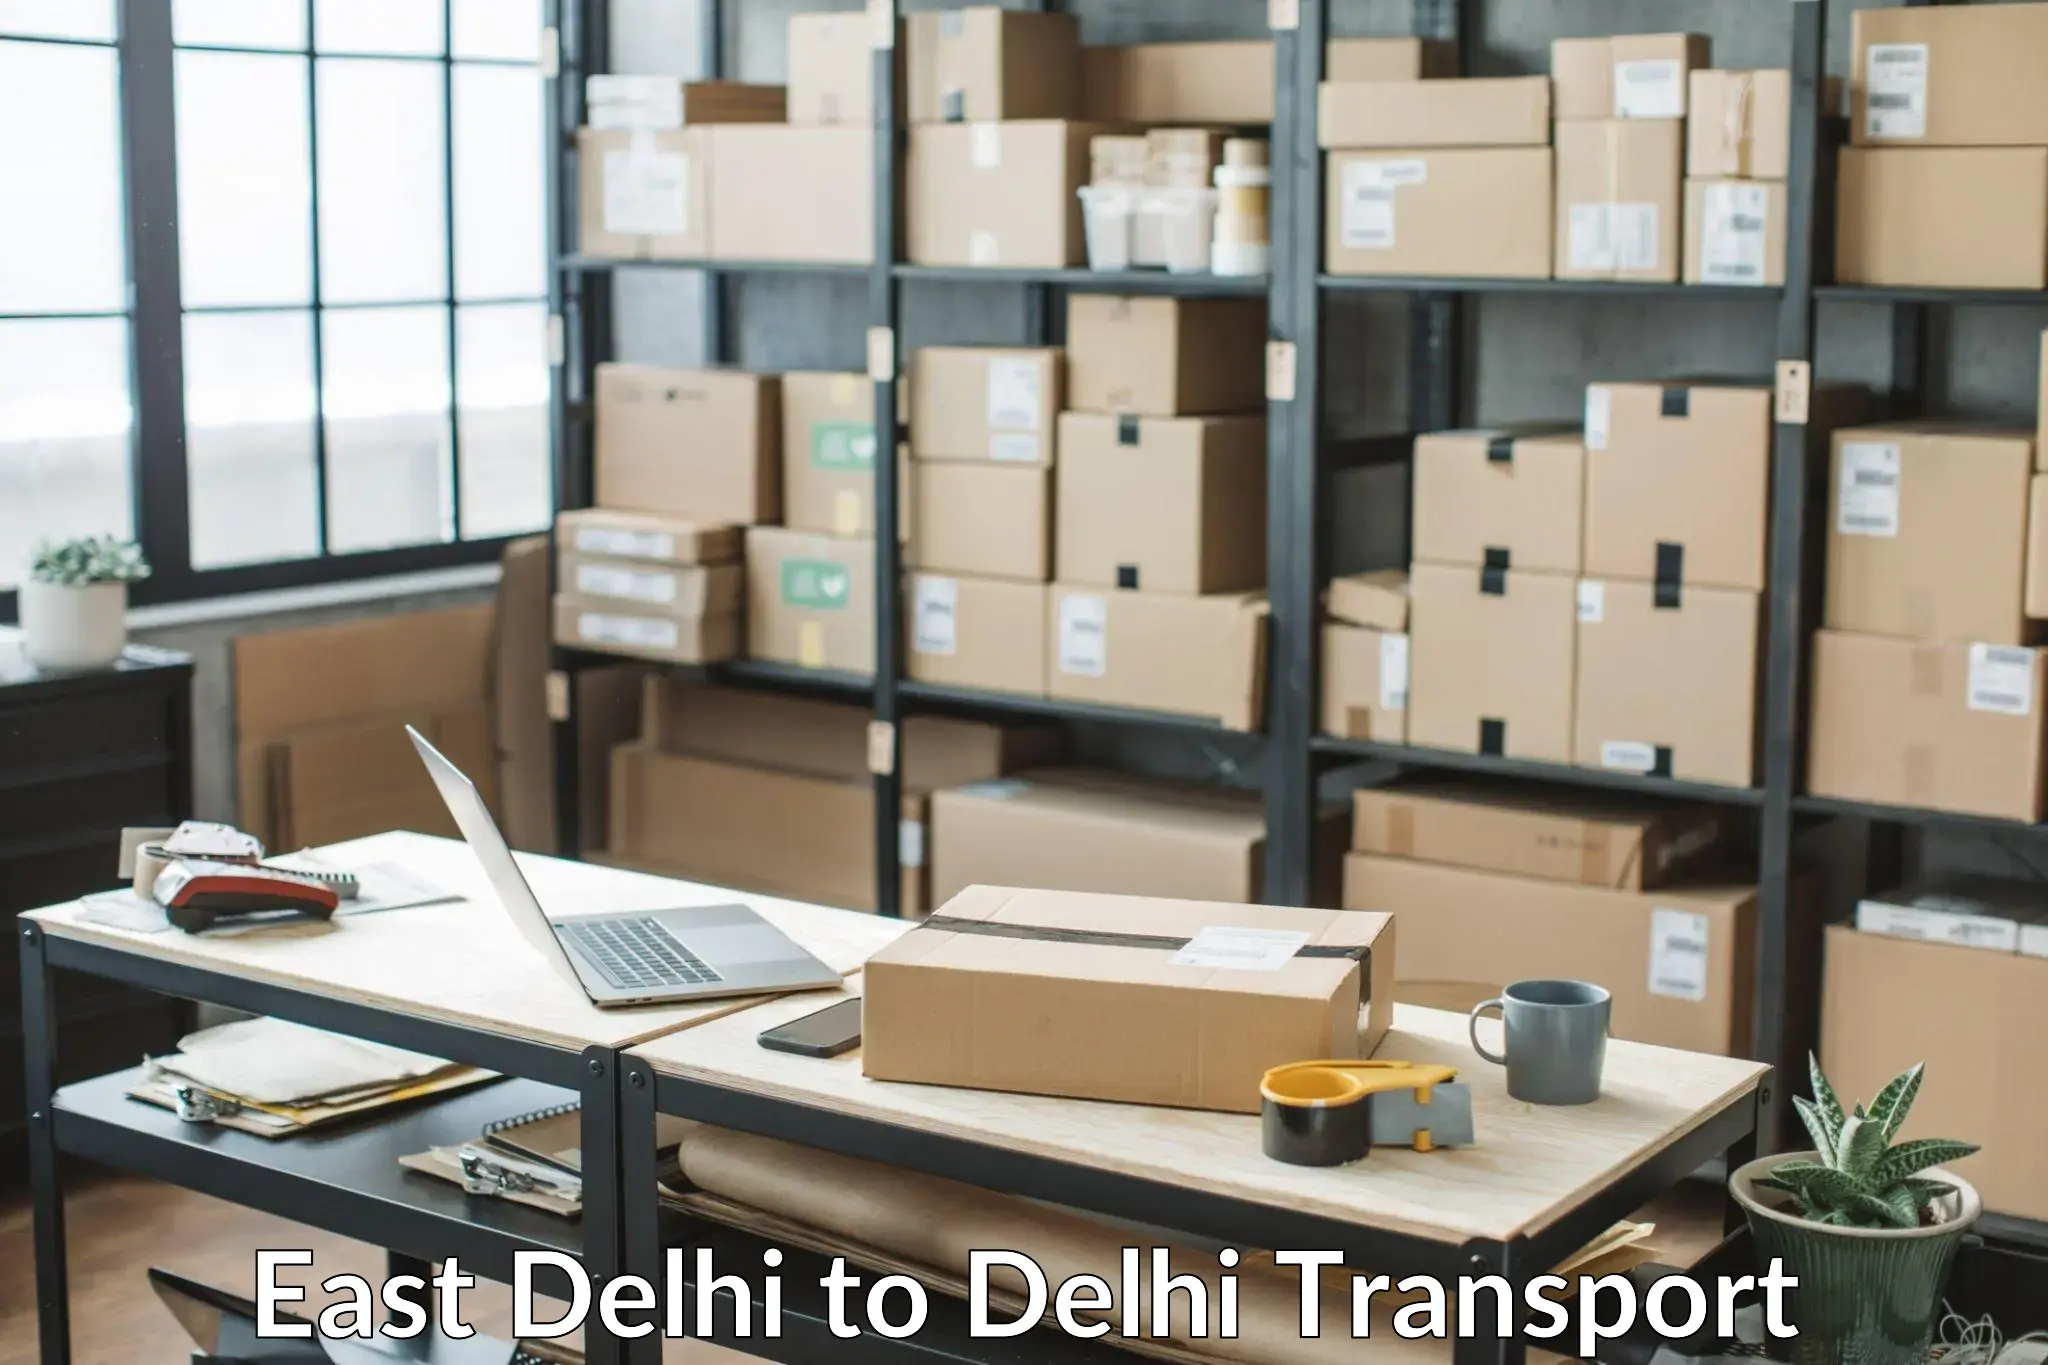 Express transport services East Delhi to Delhi